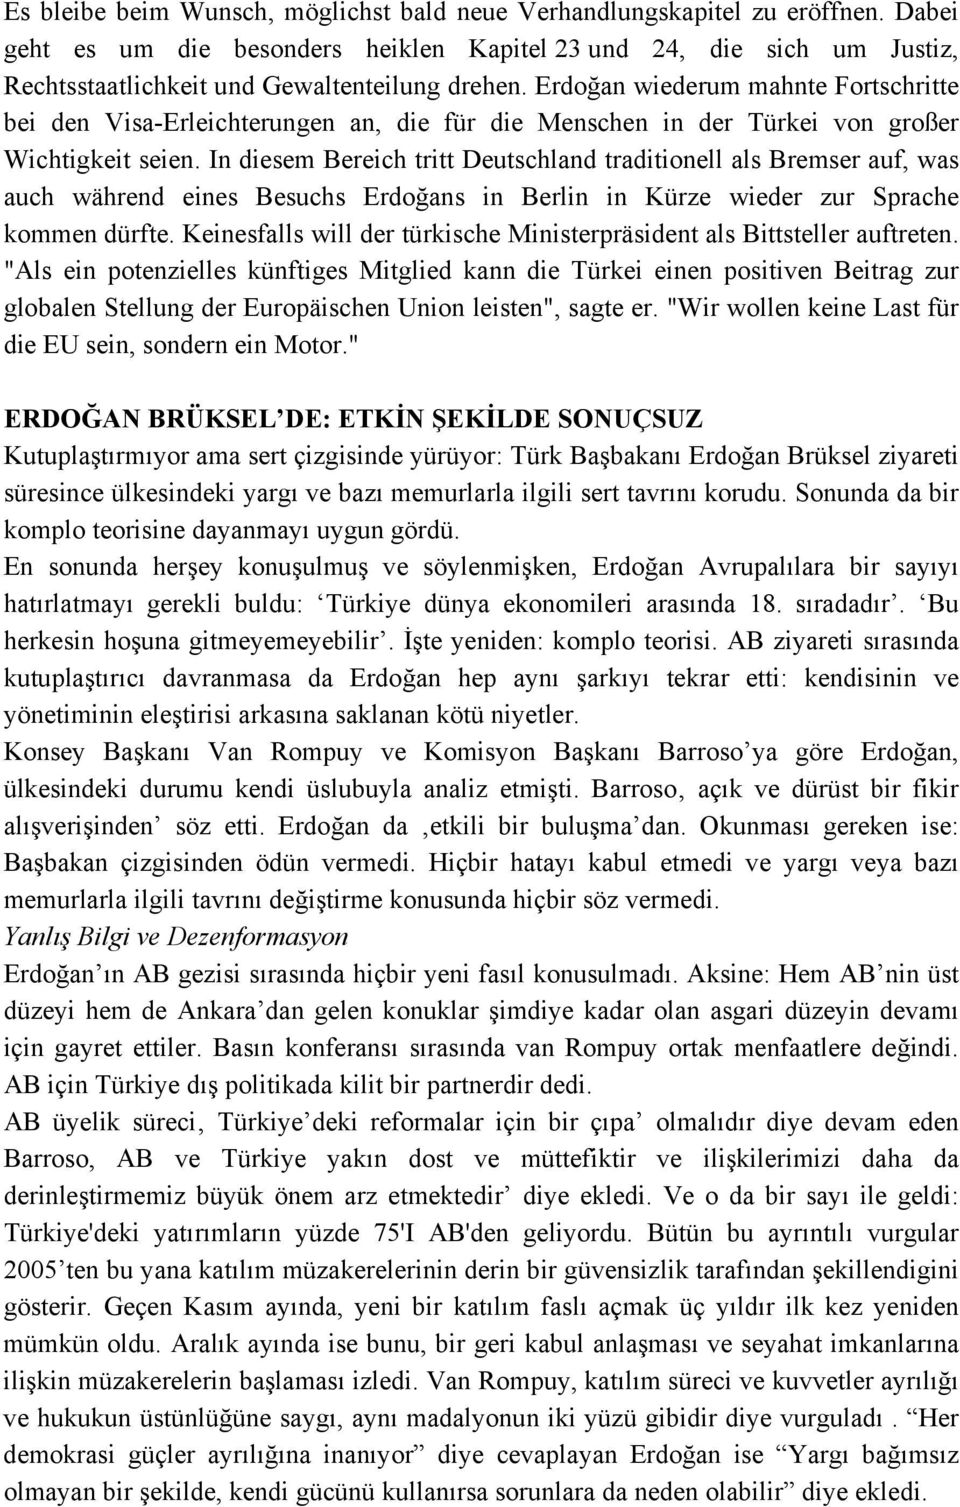 Erdoğan wiederum mahnte Fortschritte bei den Visa-Erleichterungen an, die für die Menschen in der Türkei von großer Wichtigkeit seien.